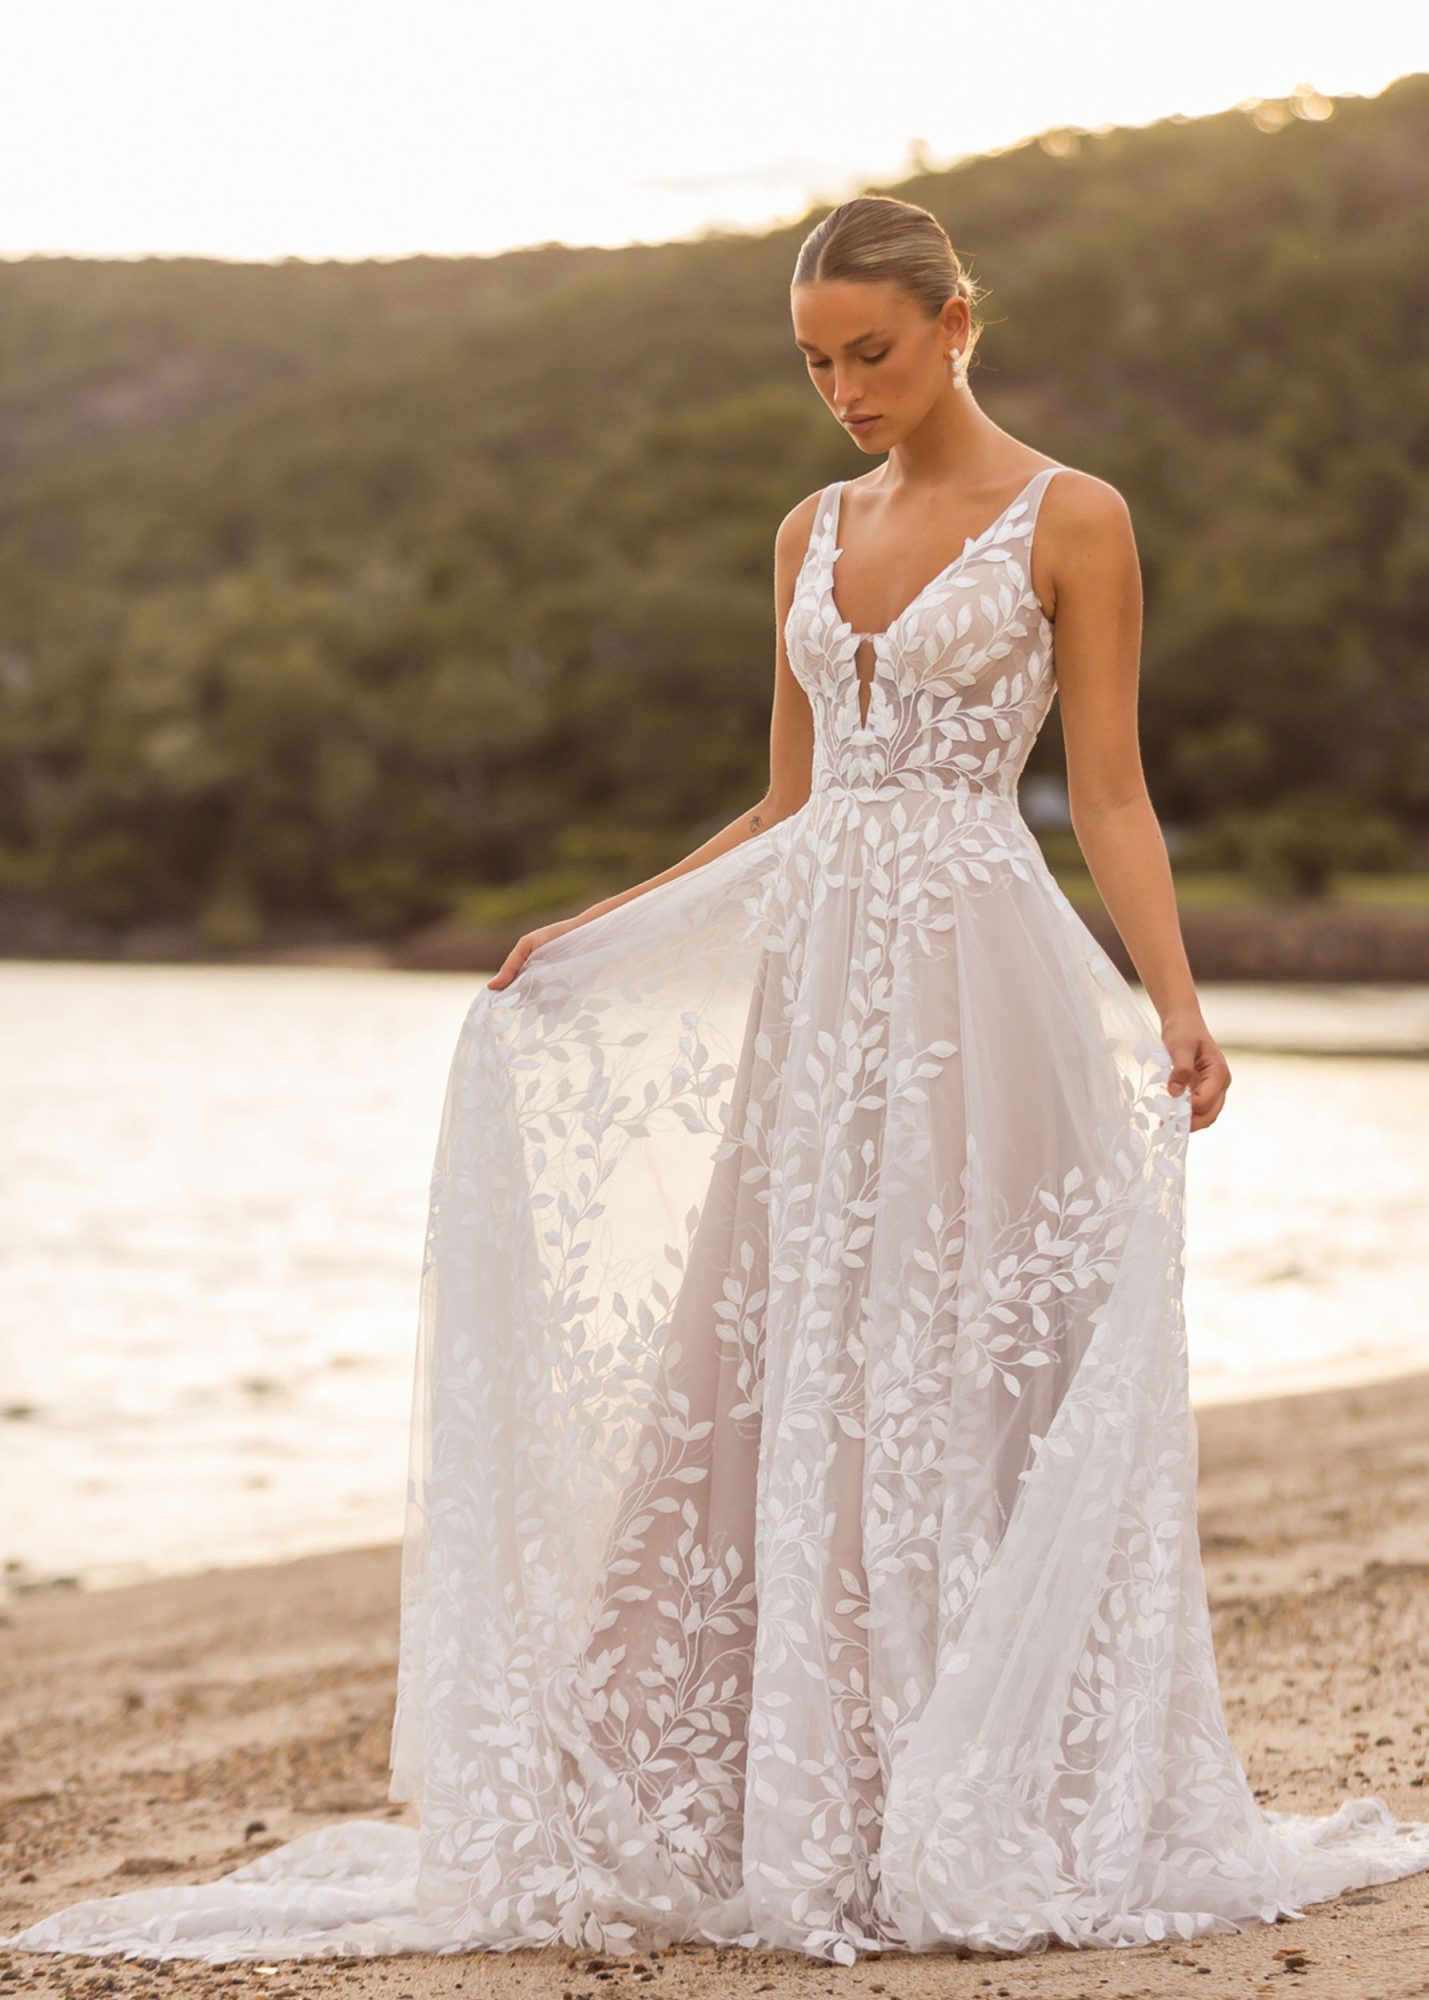 Brautkleid in A-Linie und kleiner Schleppe mit floralen Spitzen Details und luftigen Rock.